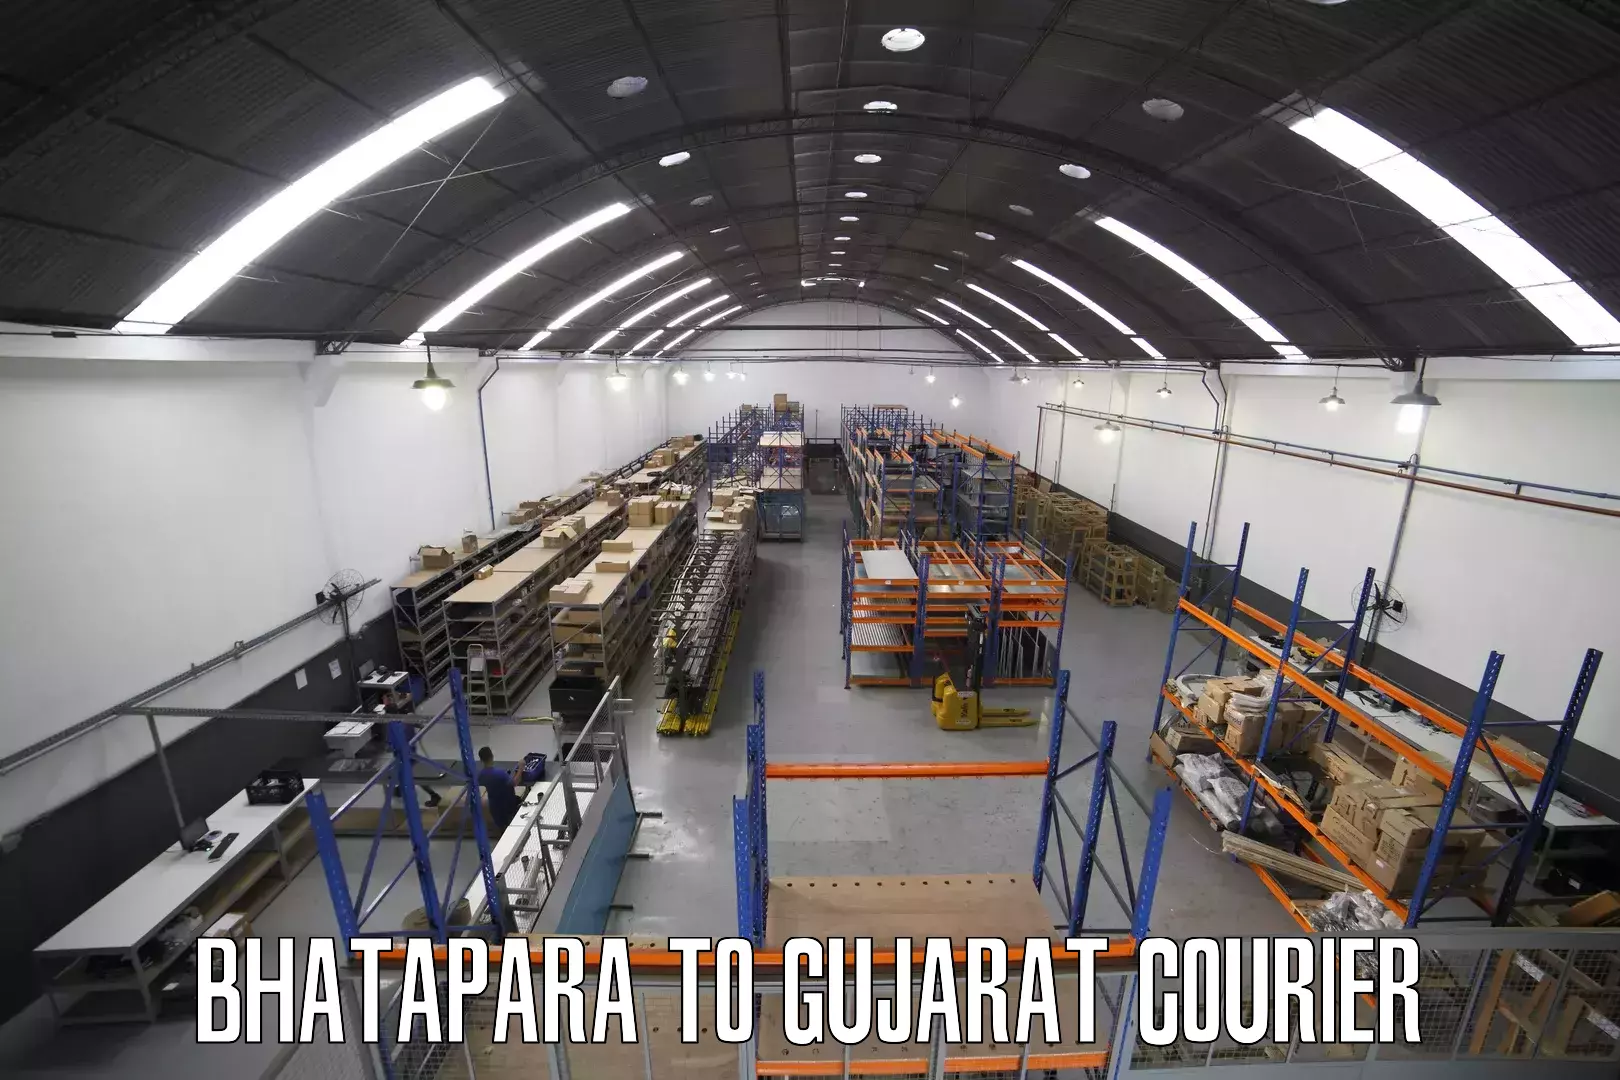 High-capacity parcel service Bhatapara to Bhavnagar